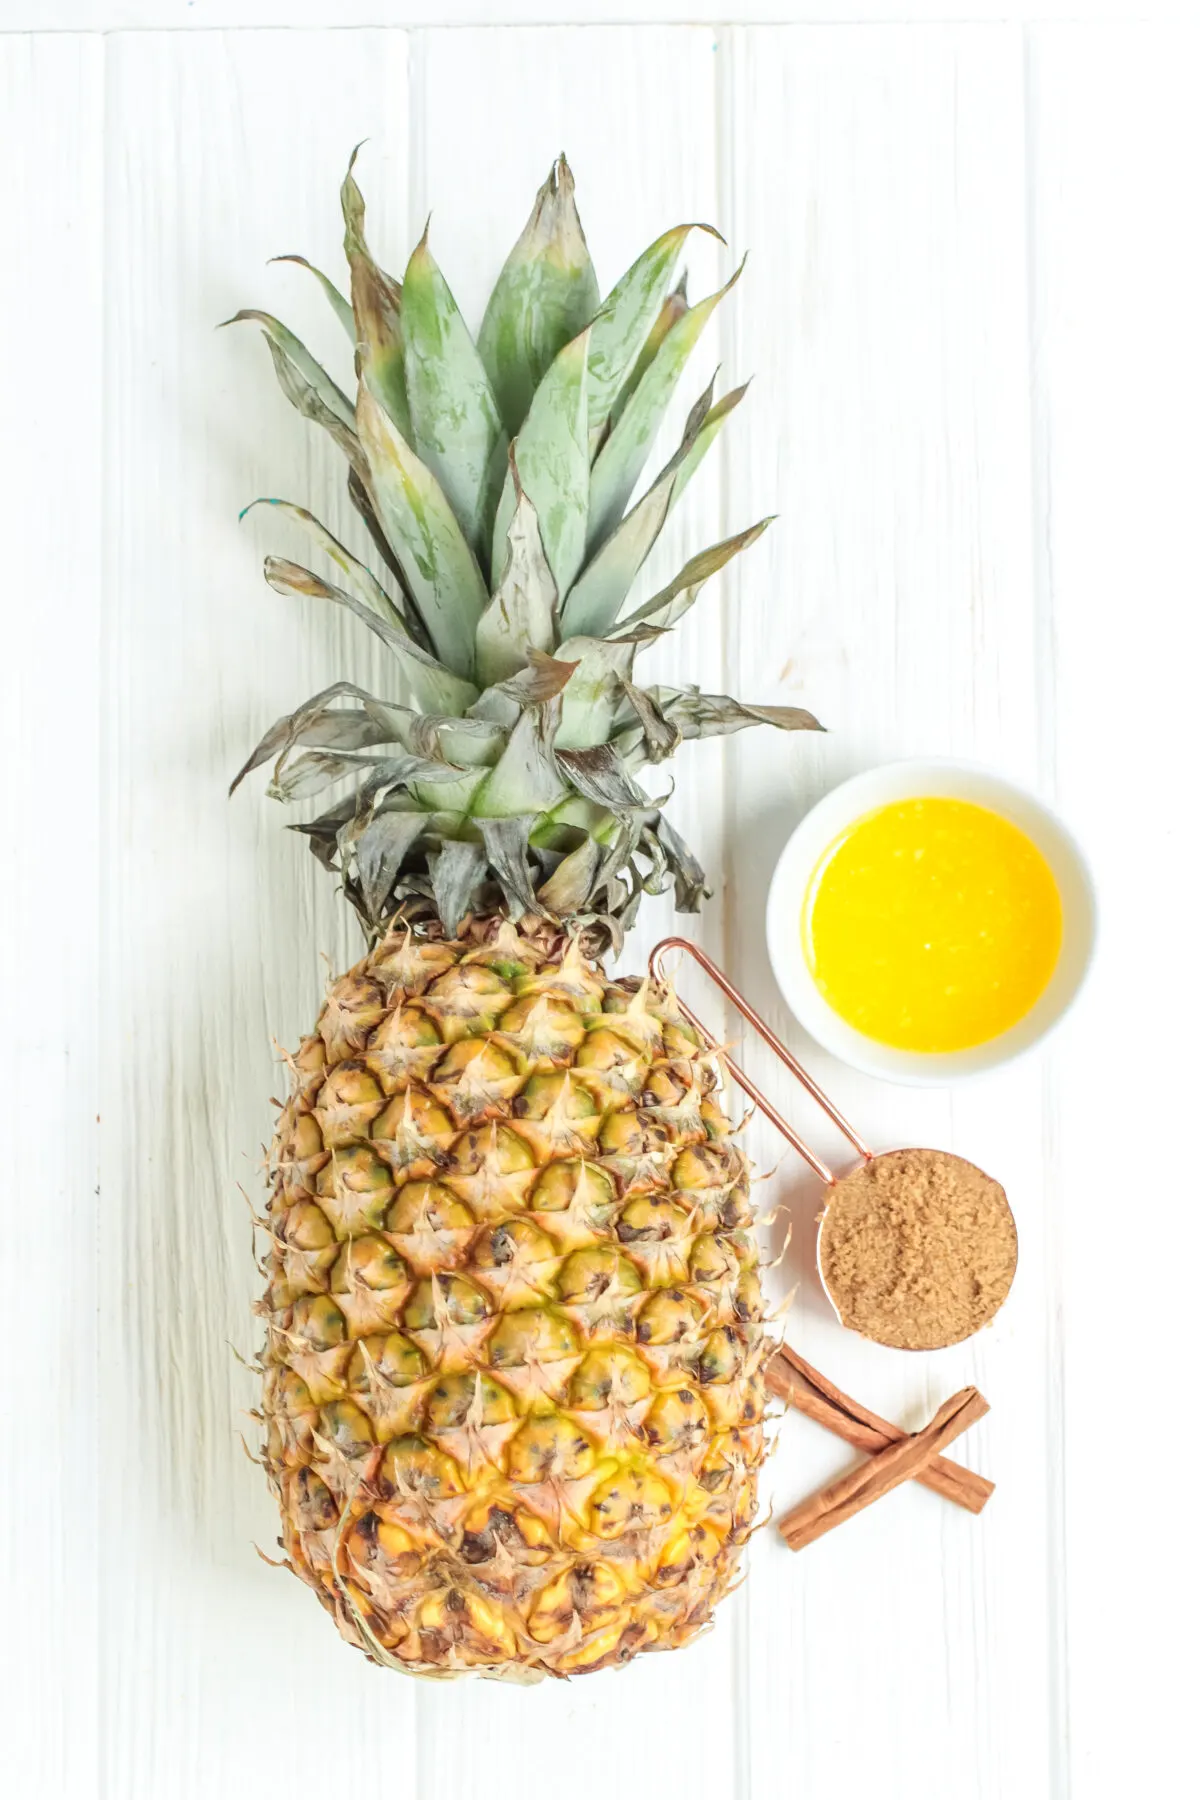 Ingredients for Air Fryer Pineapple.